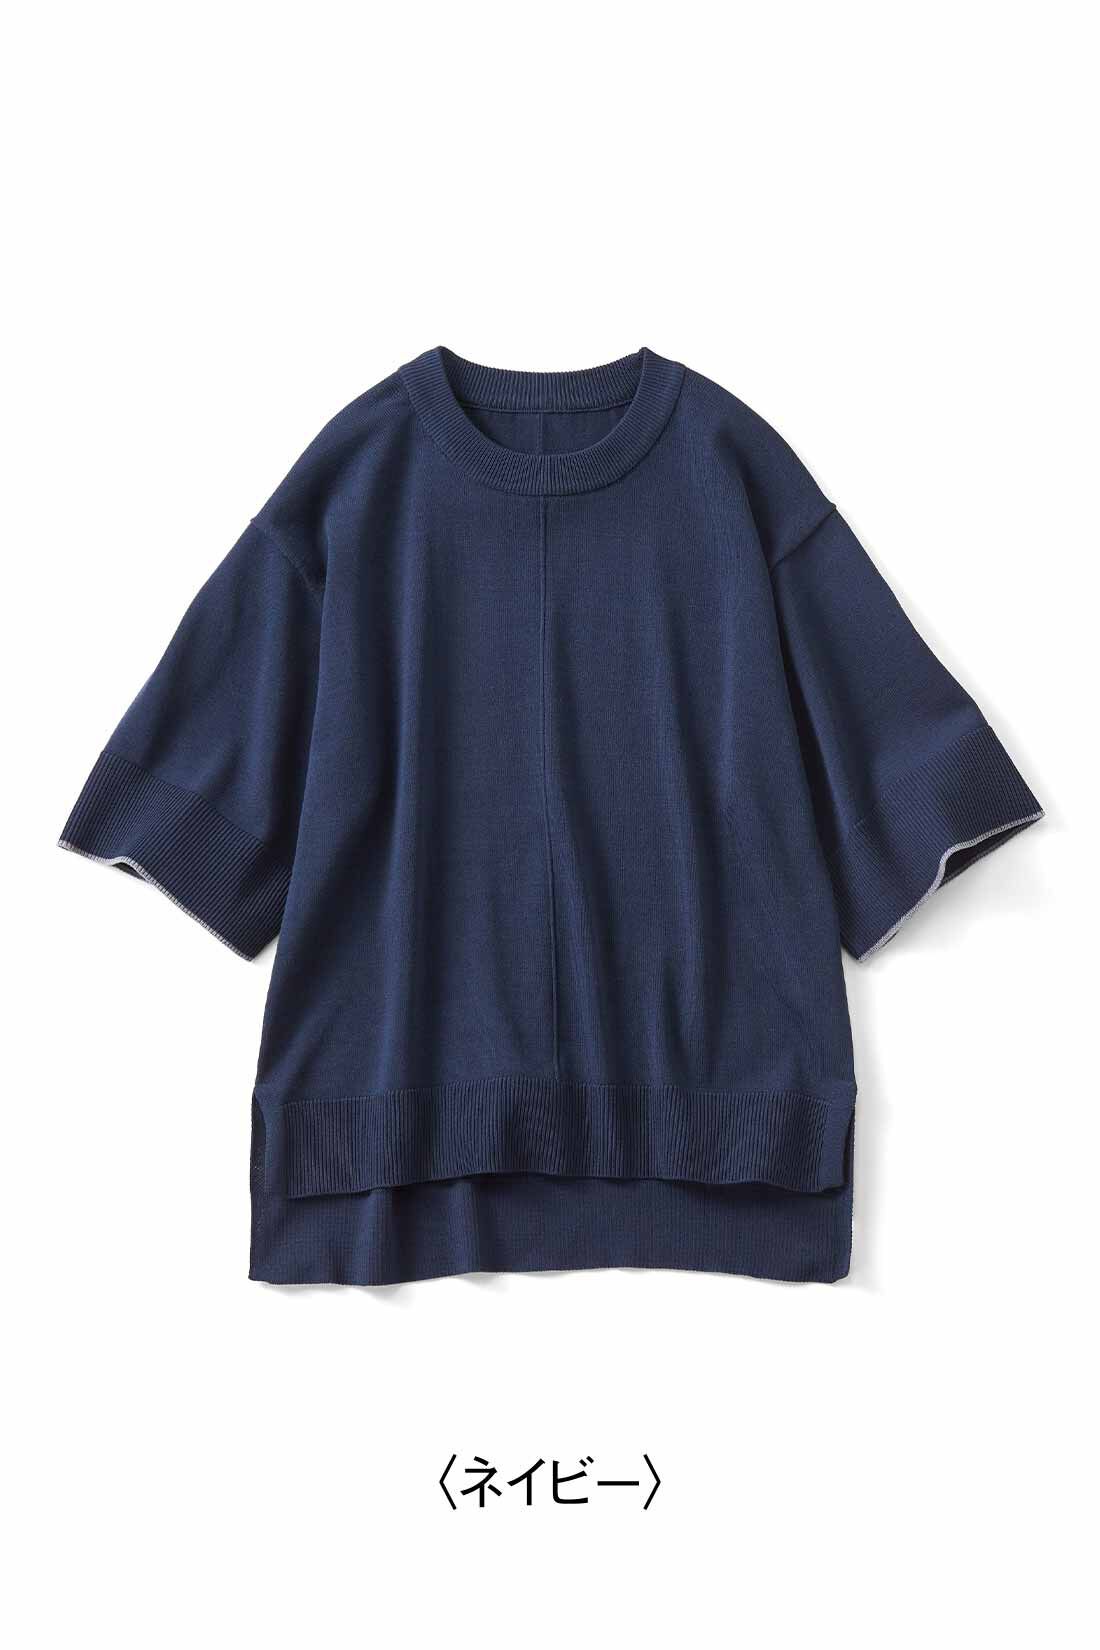 Real Stock|リブ イン コンフォート　Tシャツ感覚で着れちゃう きれいめニットトップス〈ネイビー〉